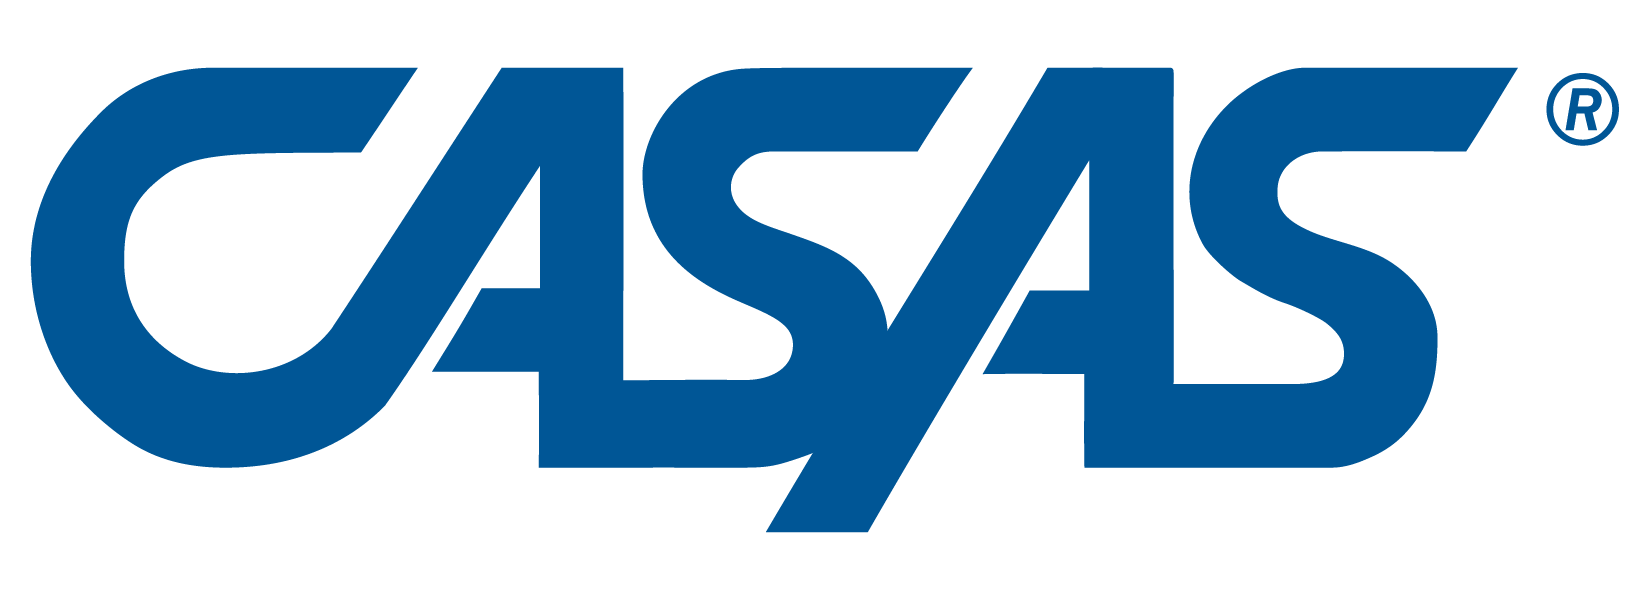 CASAS Logo